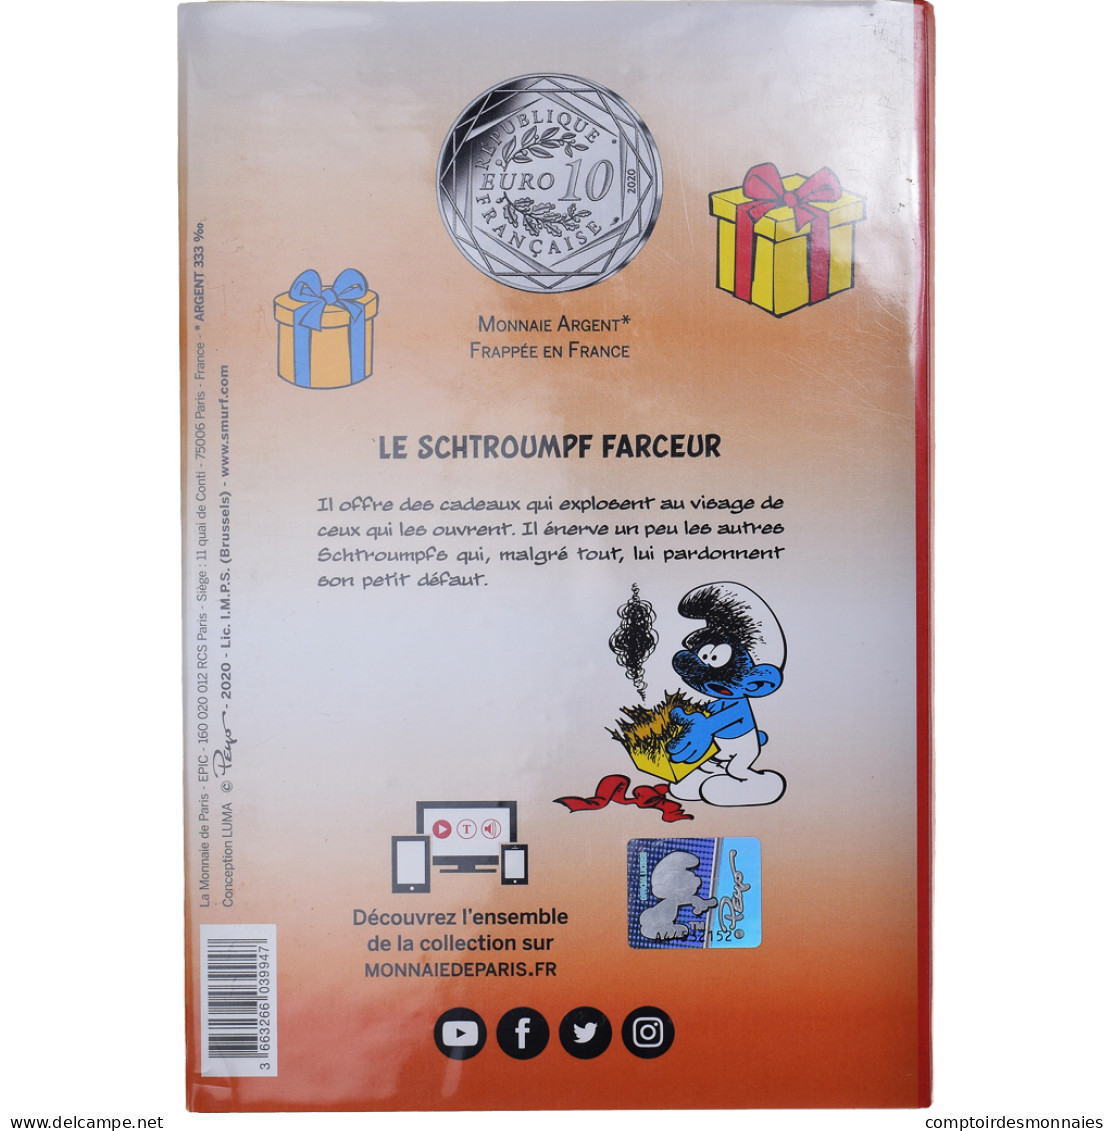 France, Monnaie De Paris, 10 Euro, Le Schtroumpf Farceur (12/20), 2020, FDC - France